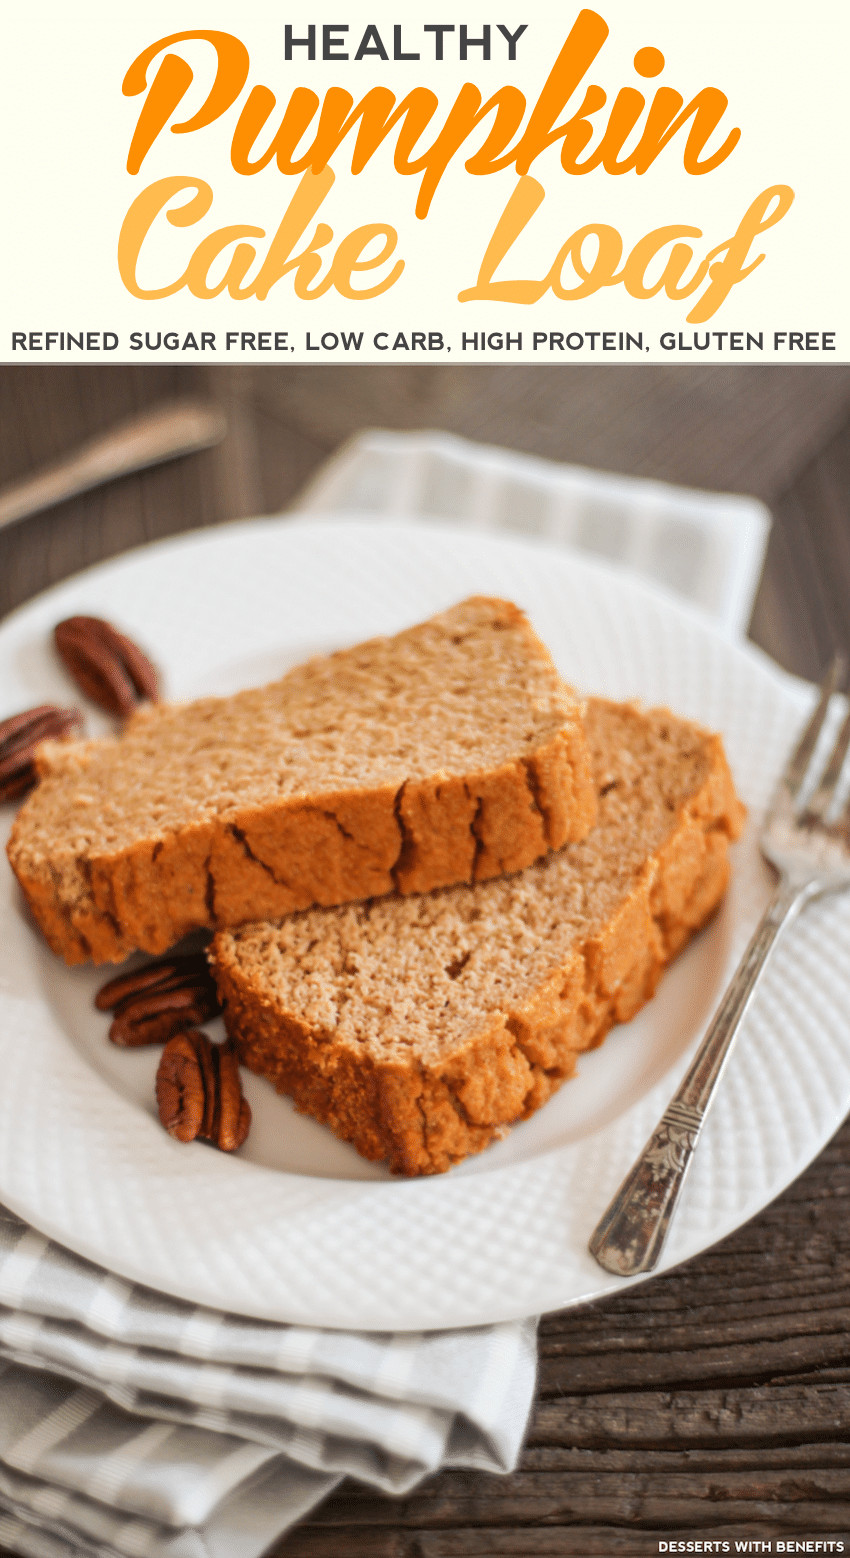 Healthy Gluten Free Desserts
 Desserts With Benefits Healthy Pumpkin Cake Loaf recipe